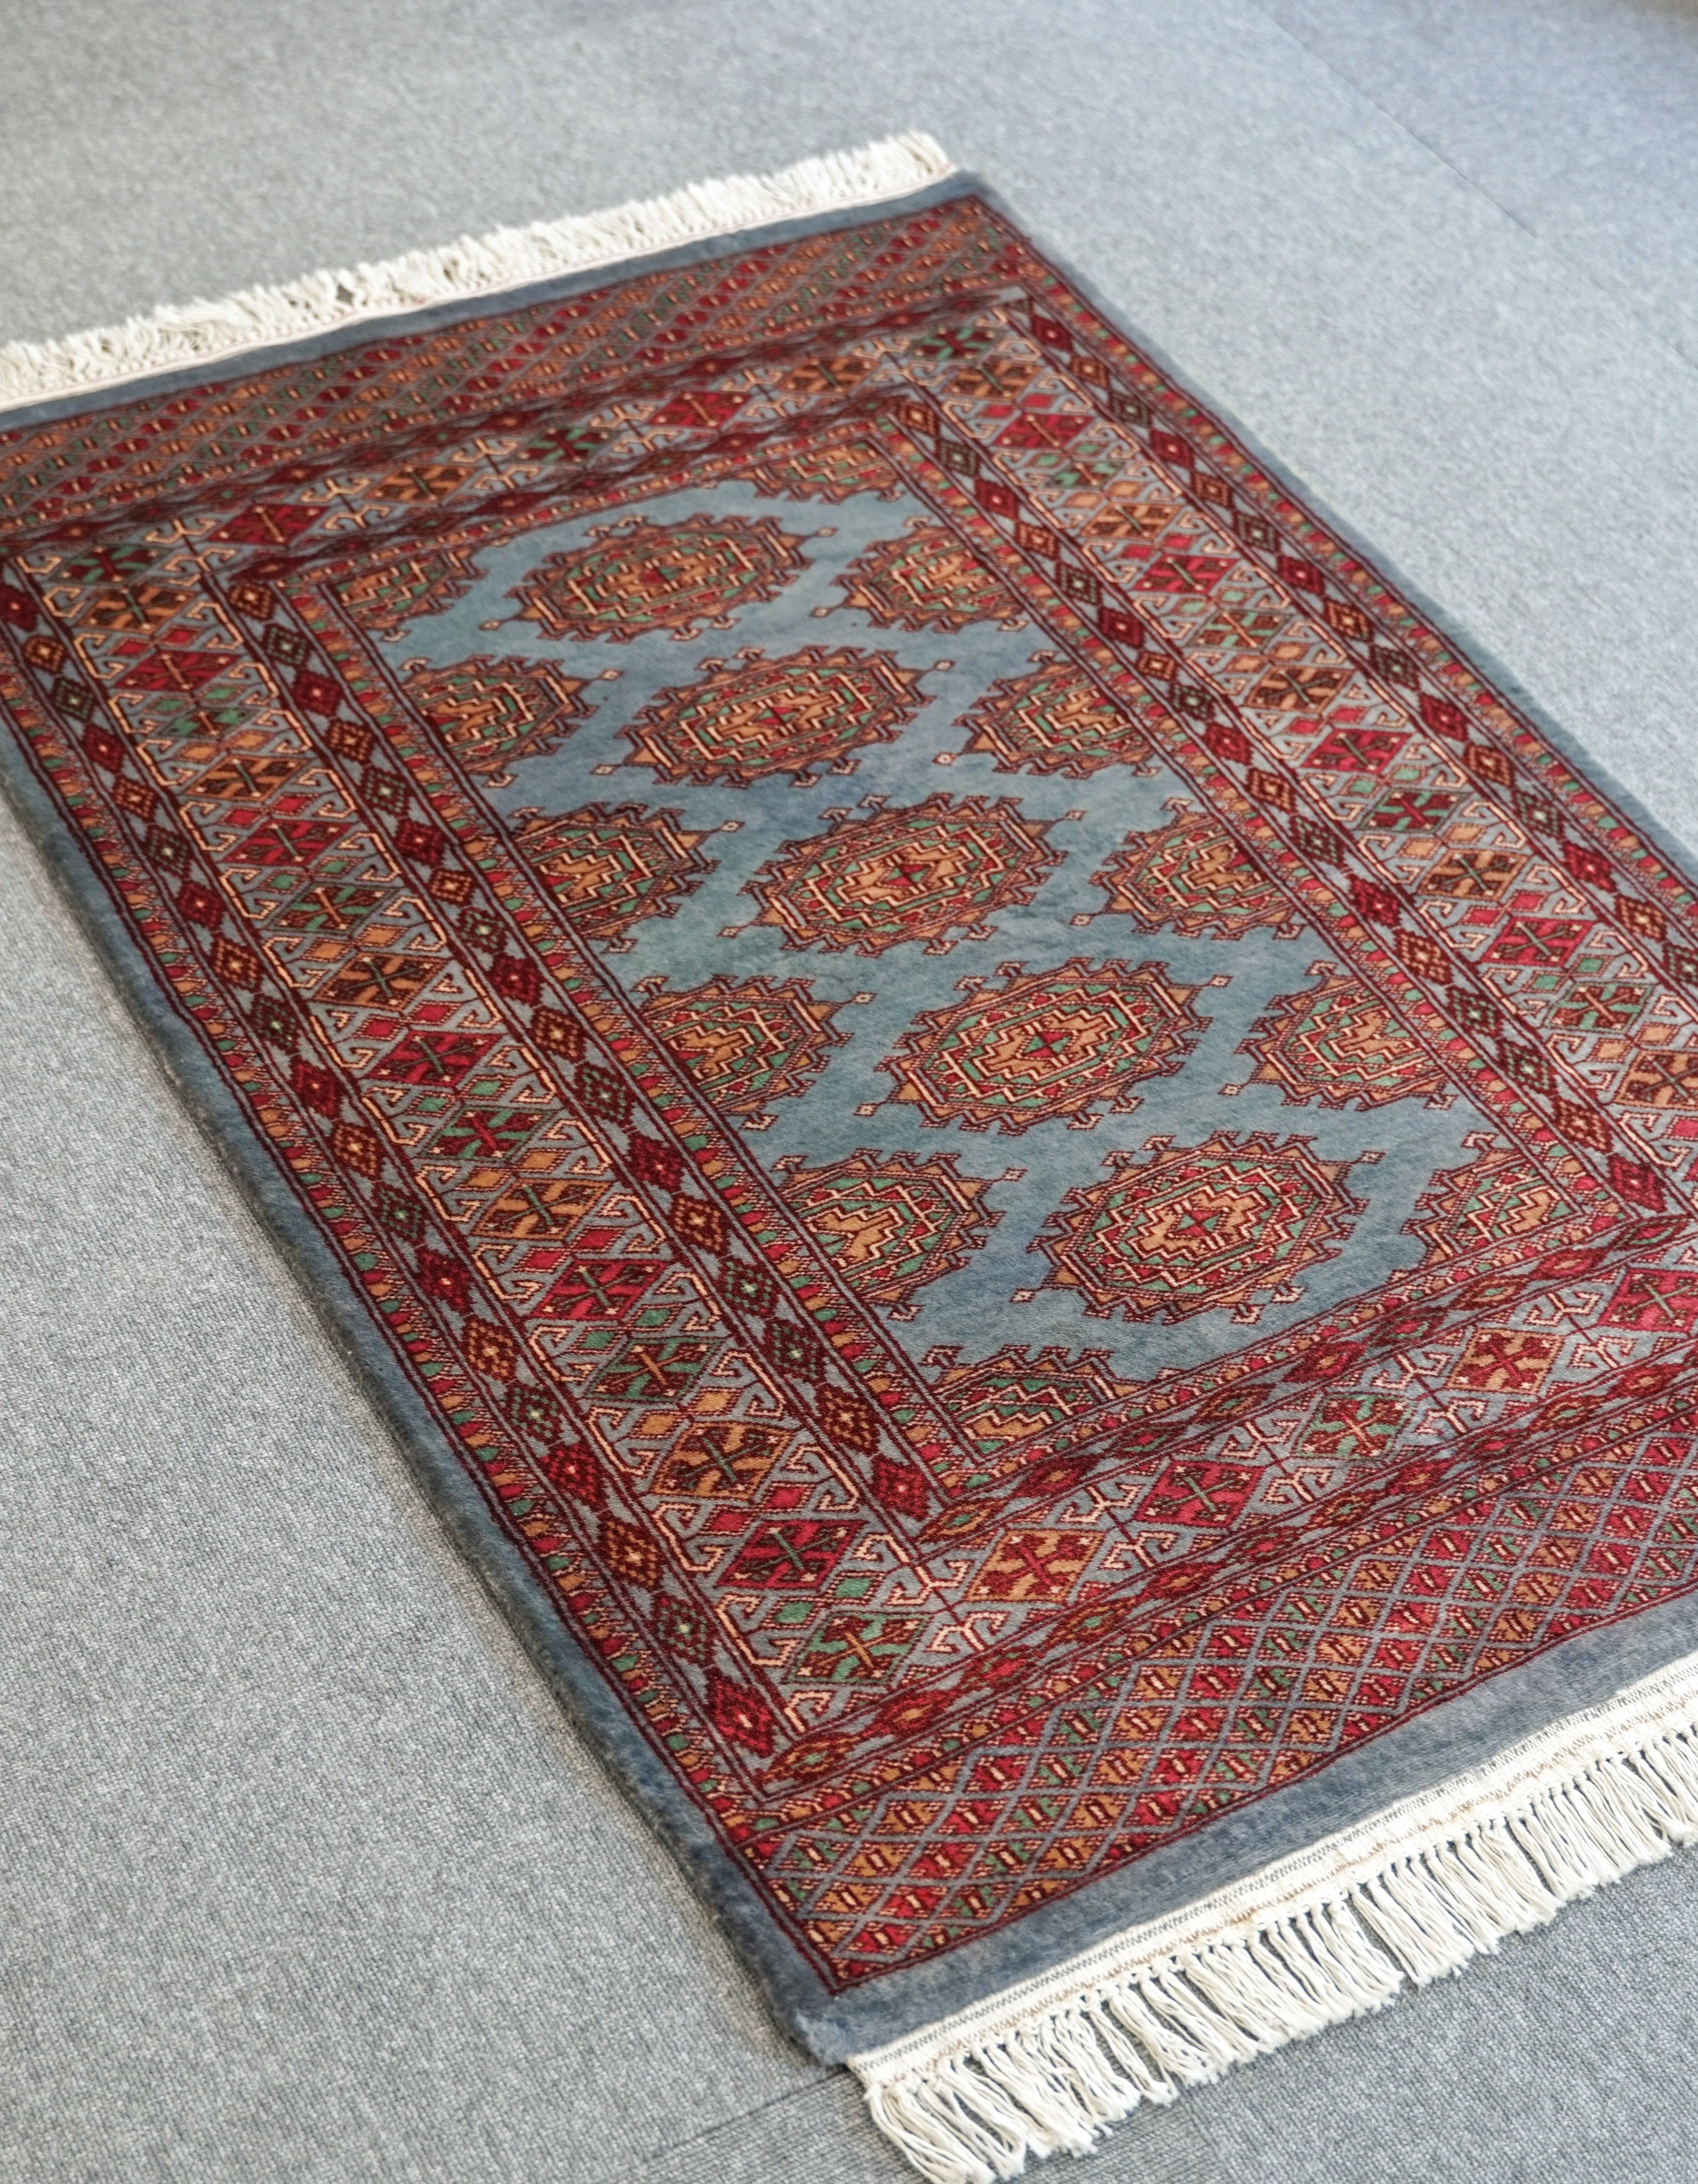 ボハラデザイン パキスタン 手織り絨毯 192×125cm